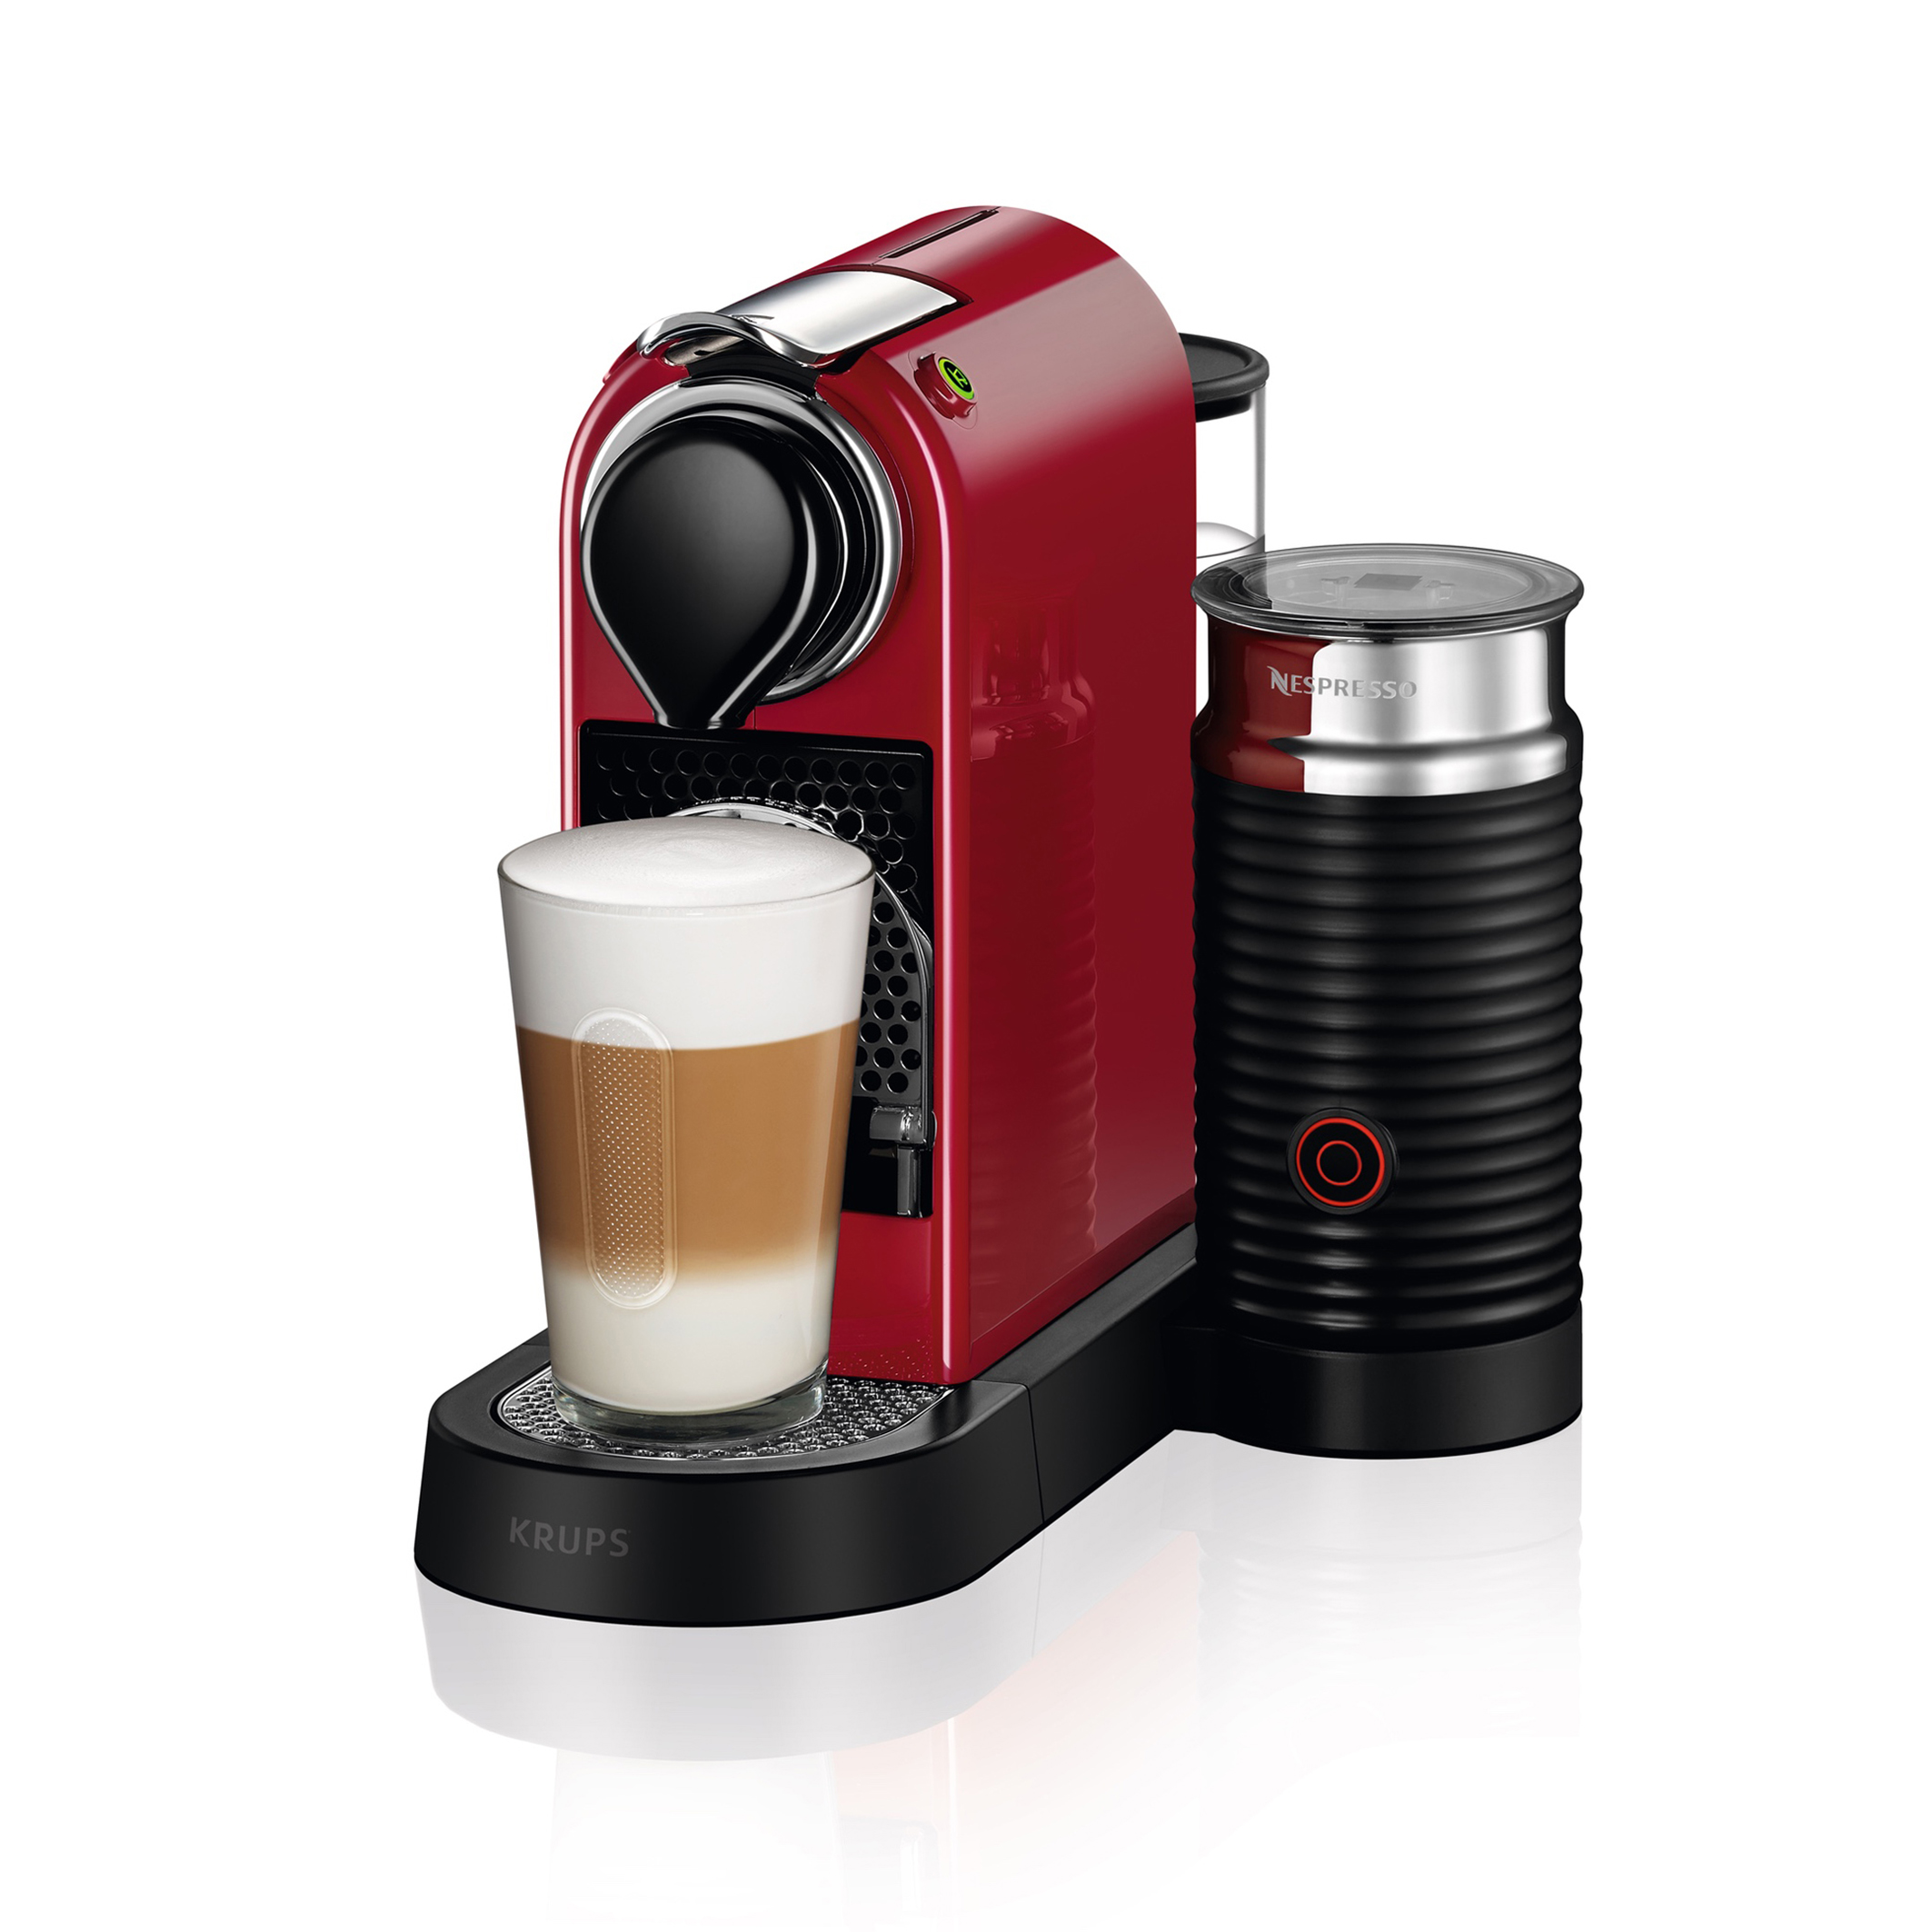 opladen pk Achtervoegsel Koffiemachine nespresso citiz & milk yy4116fd rood Krups | La Redoute